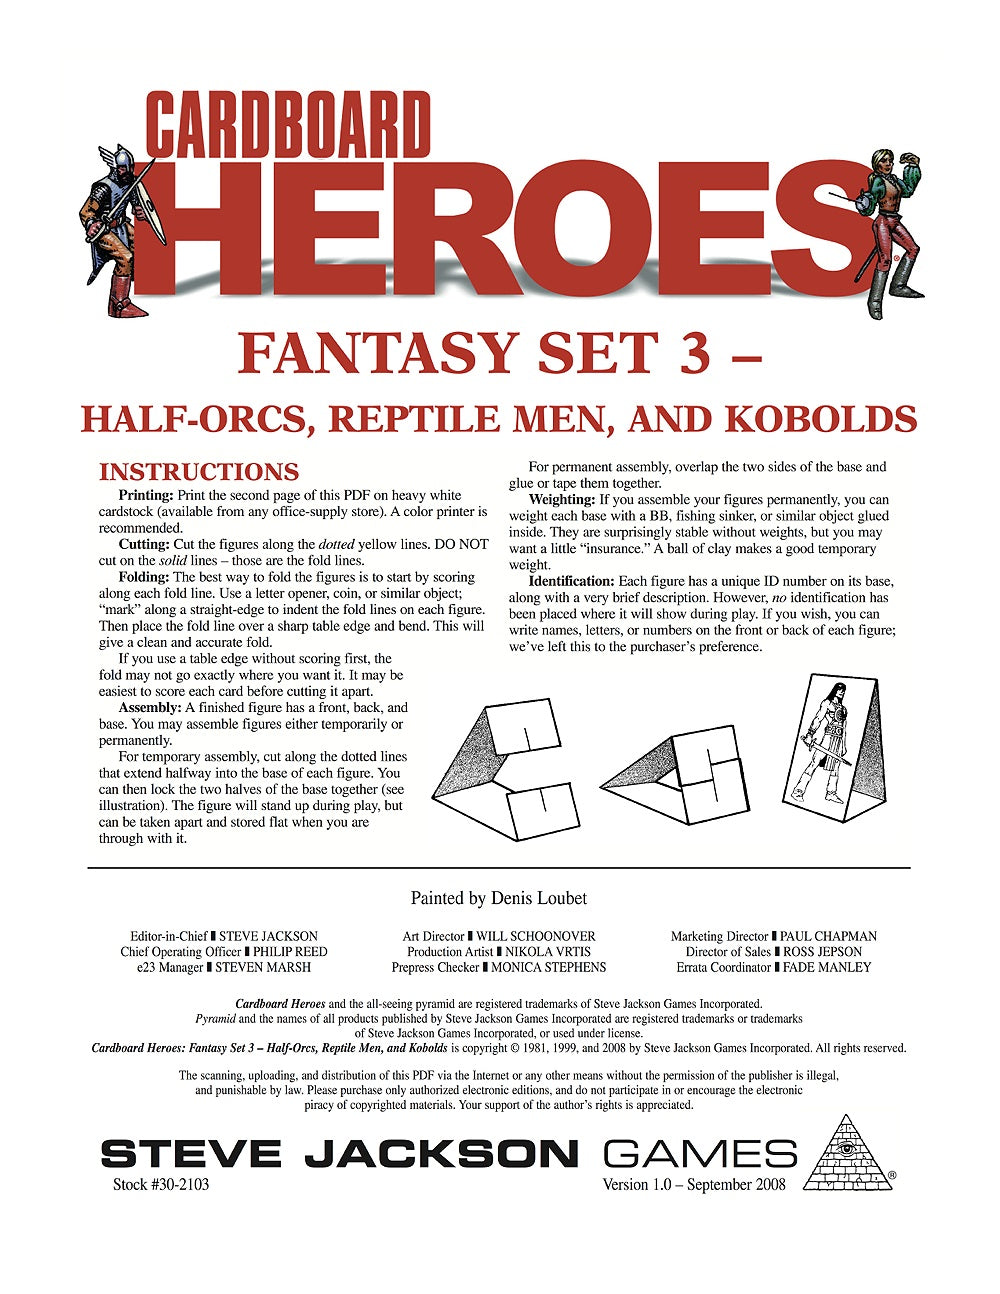 Cardboard Heroes: Fantasy Set 03